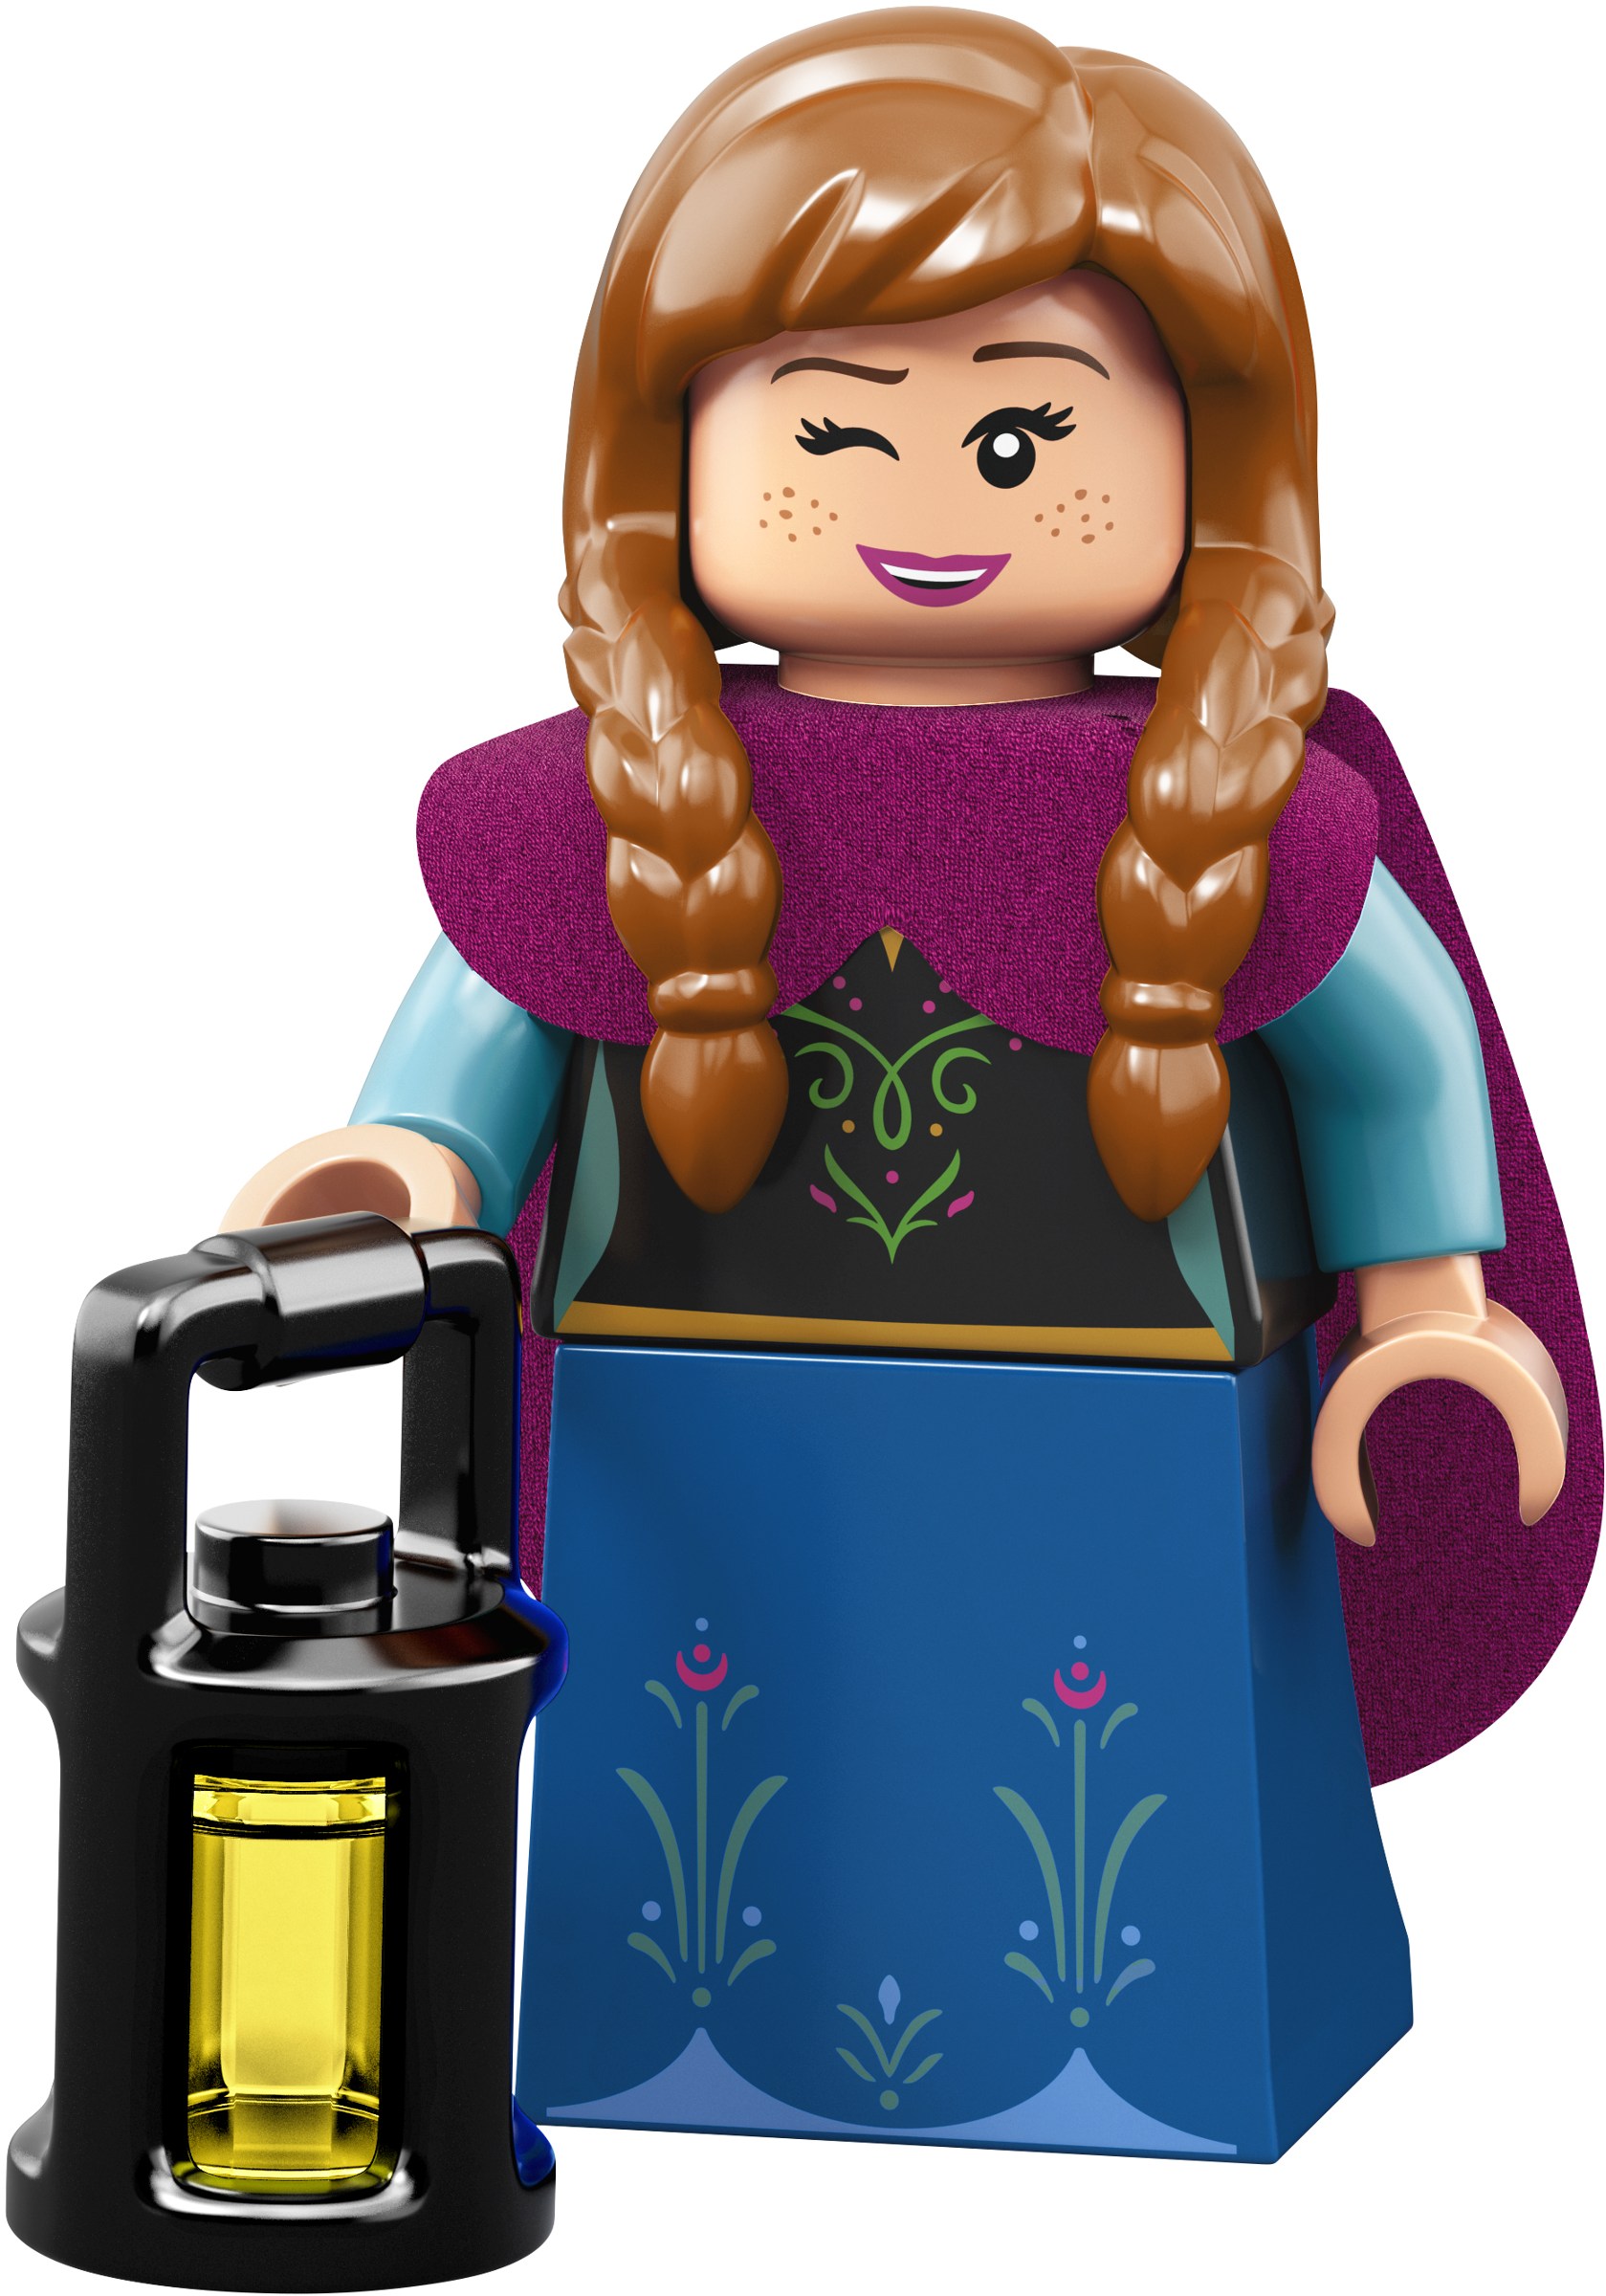 Лего Минифигурки Дисней серия 2 71024-10 Анна